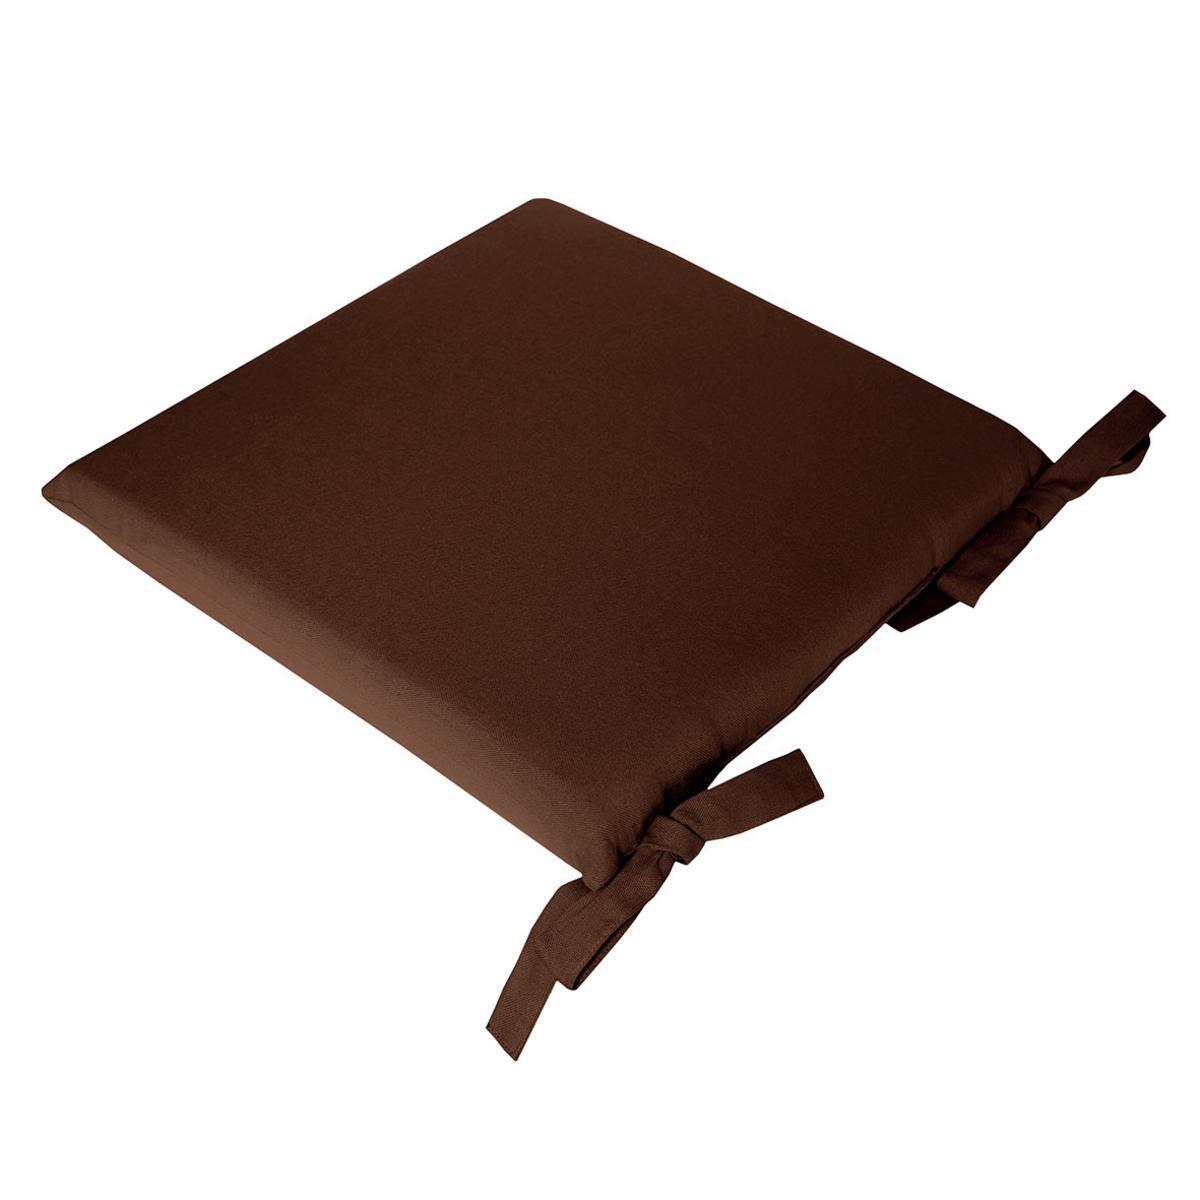 Galette de chaise à nouettes - Coton et mousse - 38 x 38 x H 4,5 cm - Marron chocolat